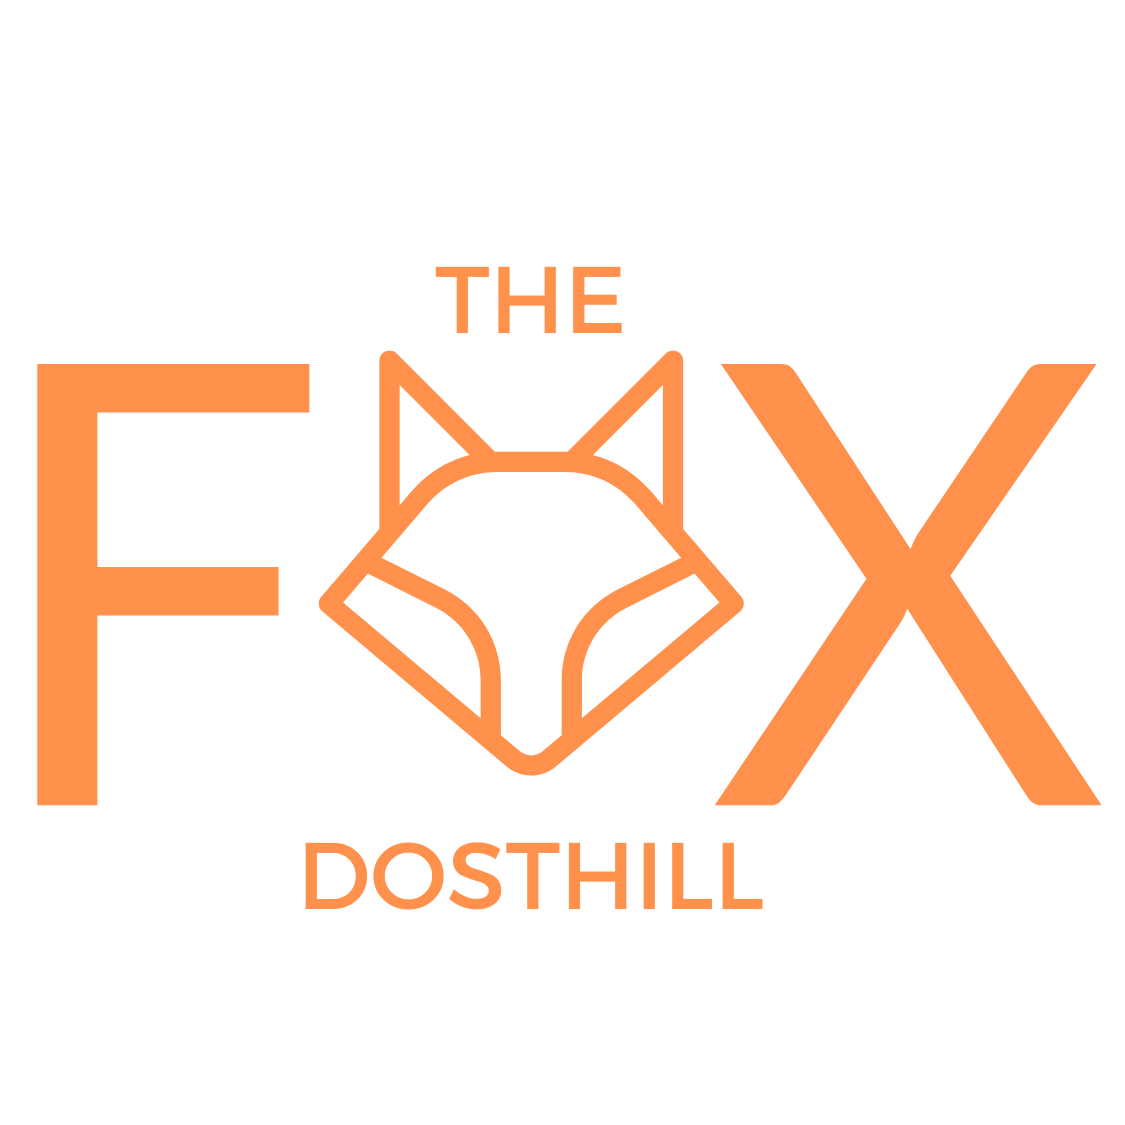 The Fox Inn, Dosthill